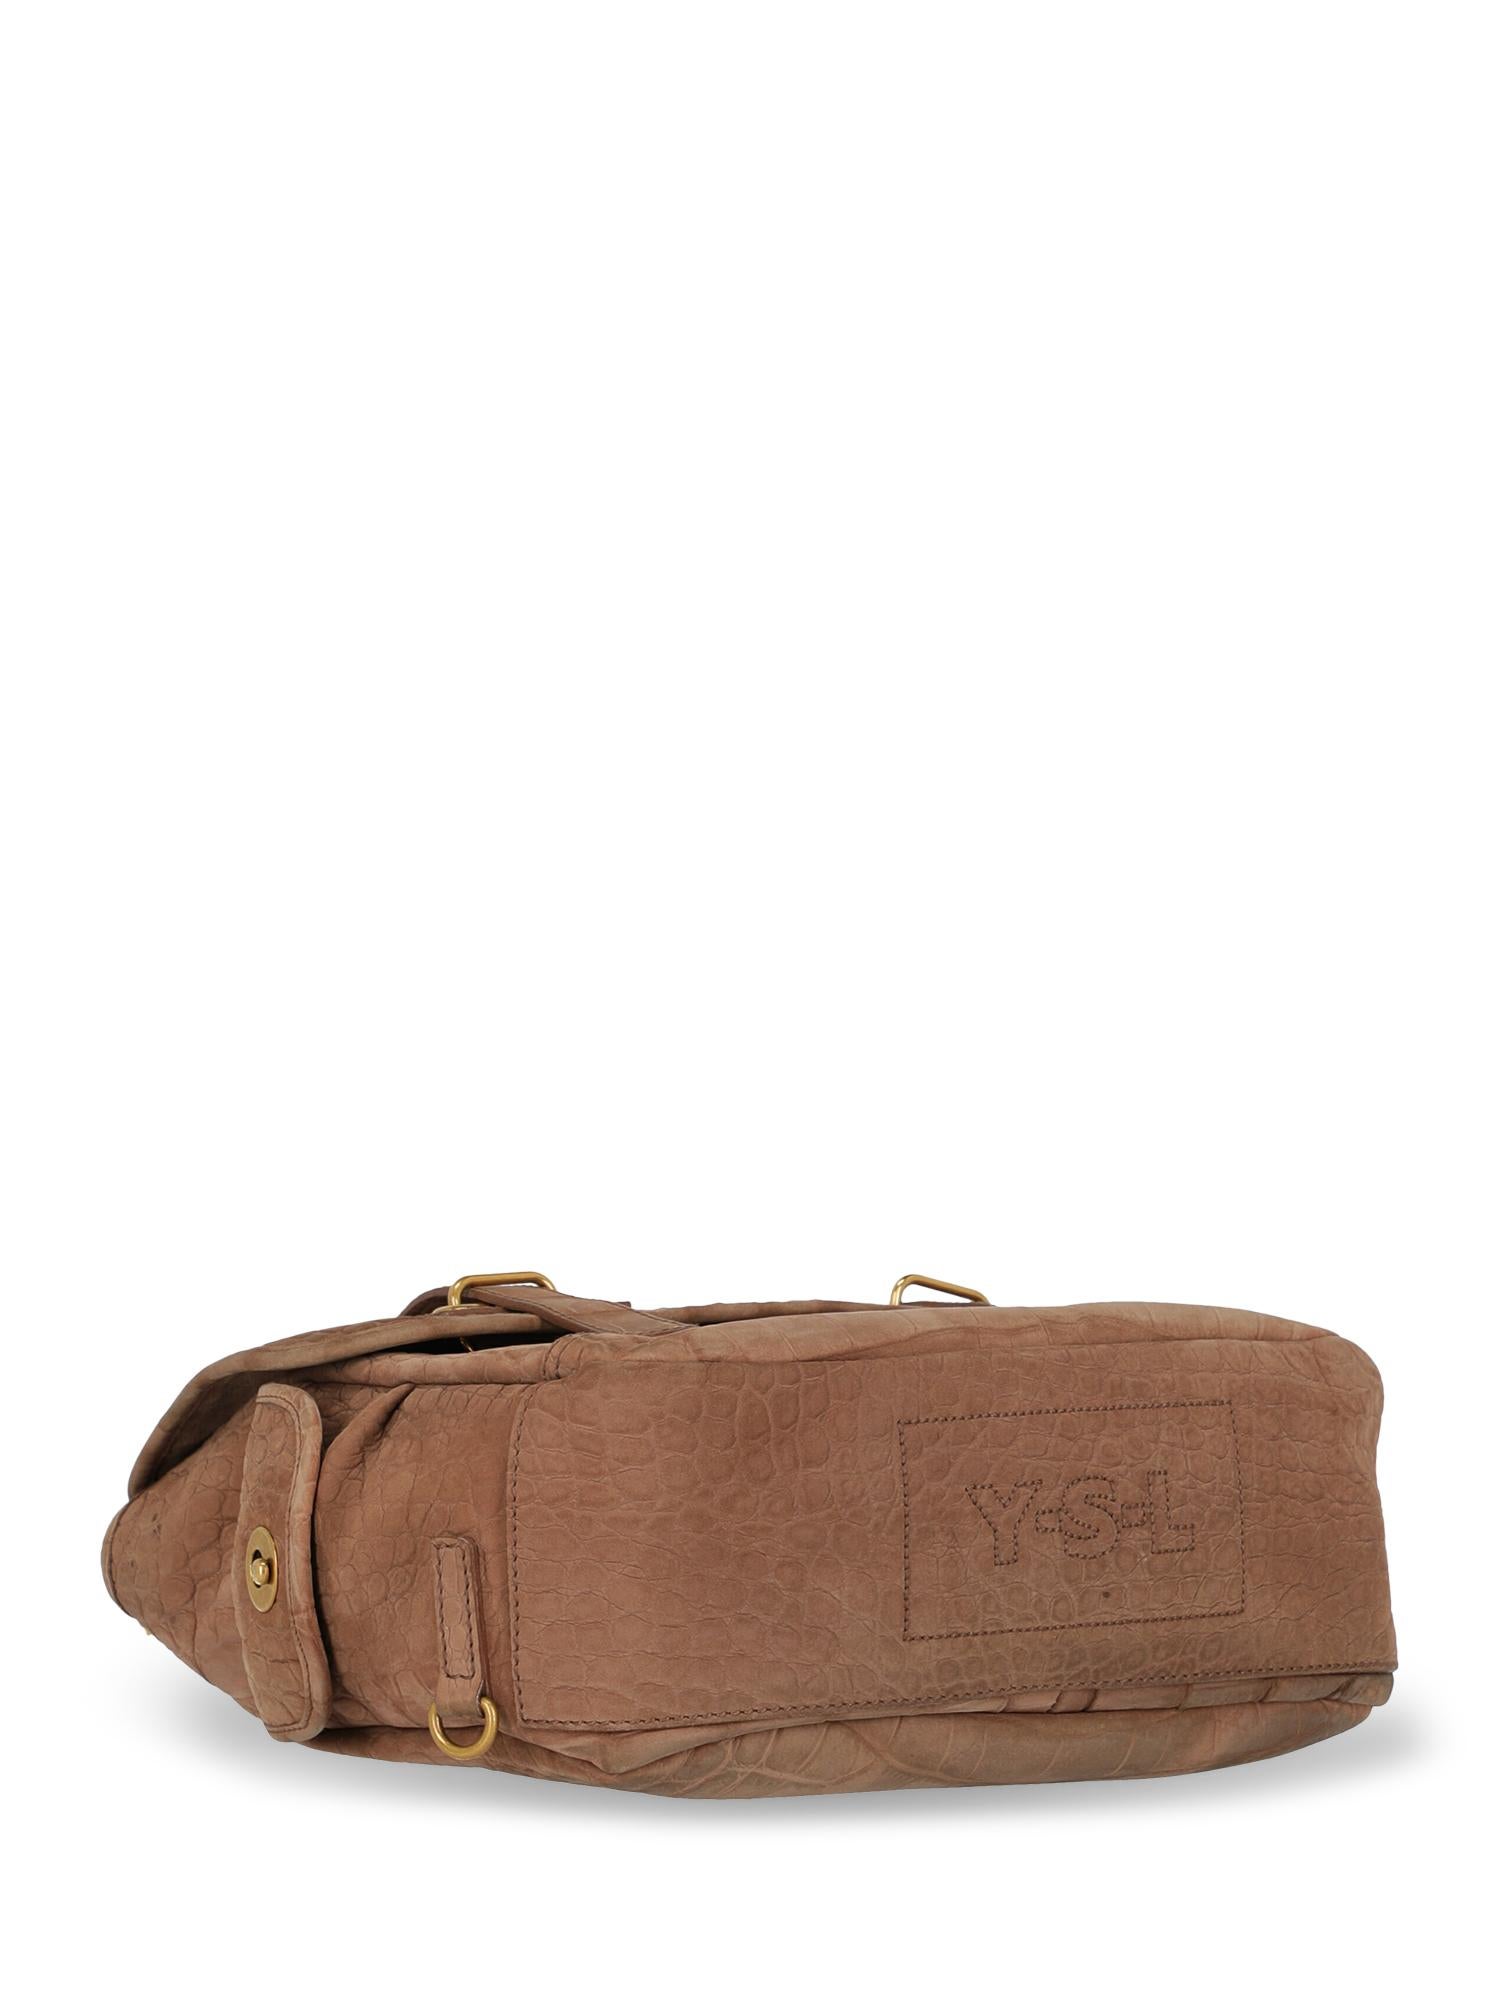 Saint Laurent Woman Shoulder bag Brown  For Sale 1